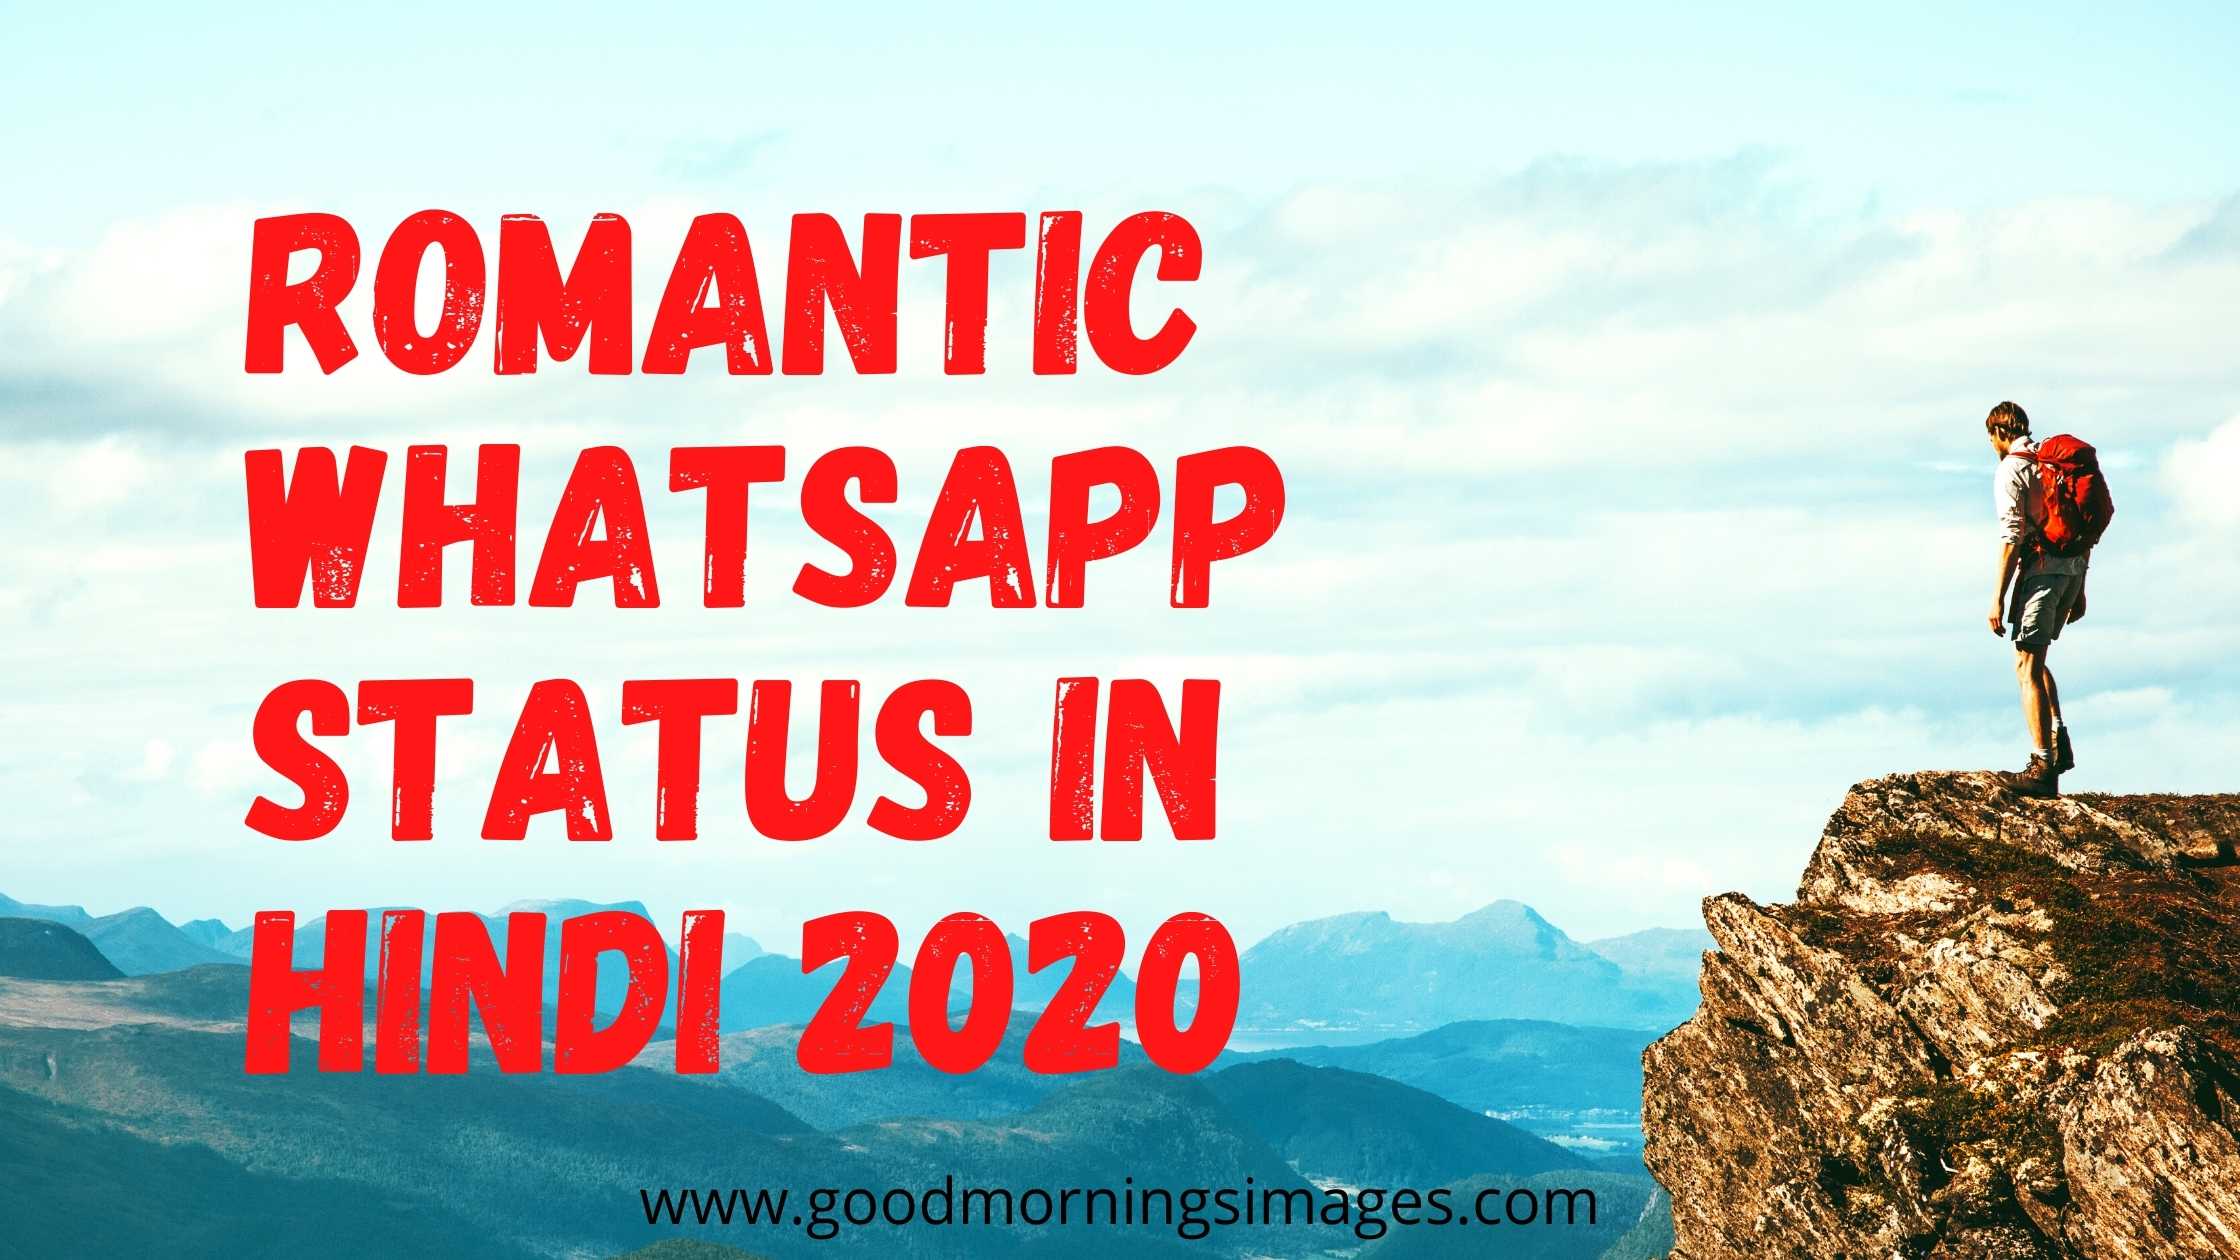 New Romantic Whatsapp Status in Hindi